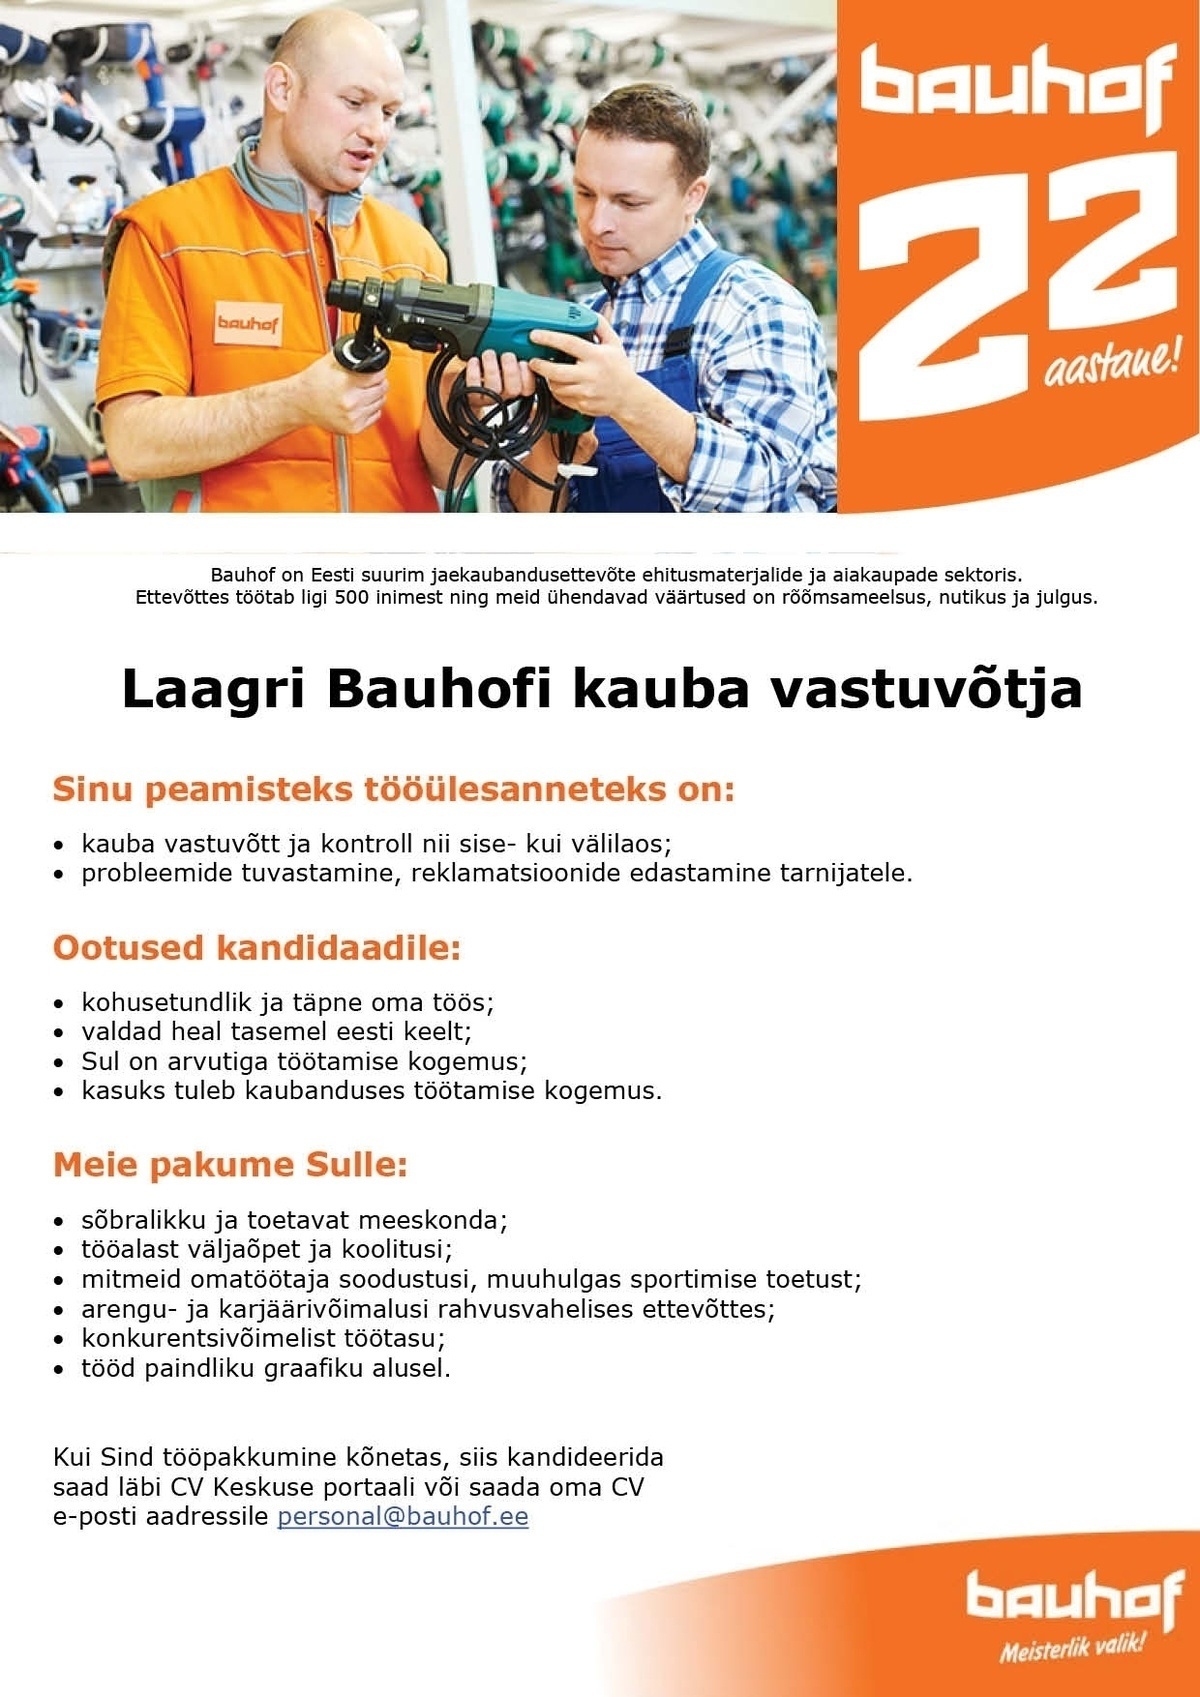 Bauhof Group AS Laagri Bauhofi kauba vastuvõtja